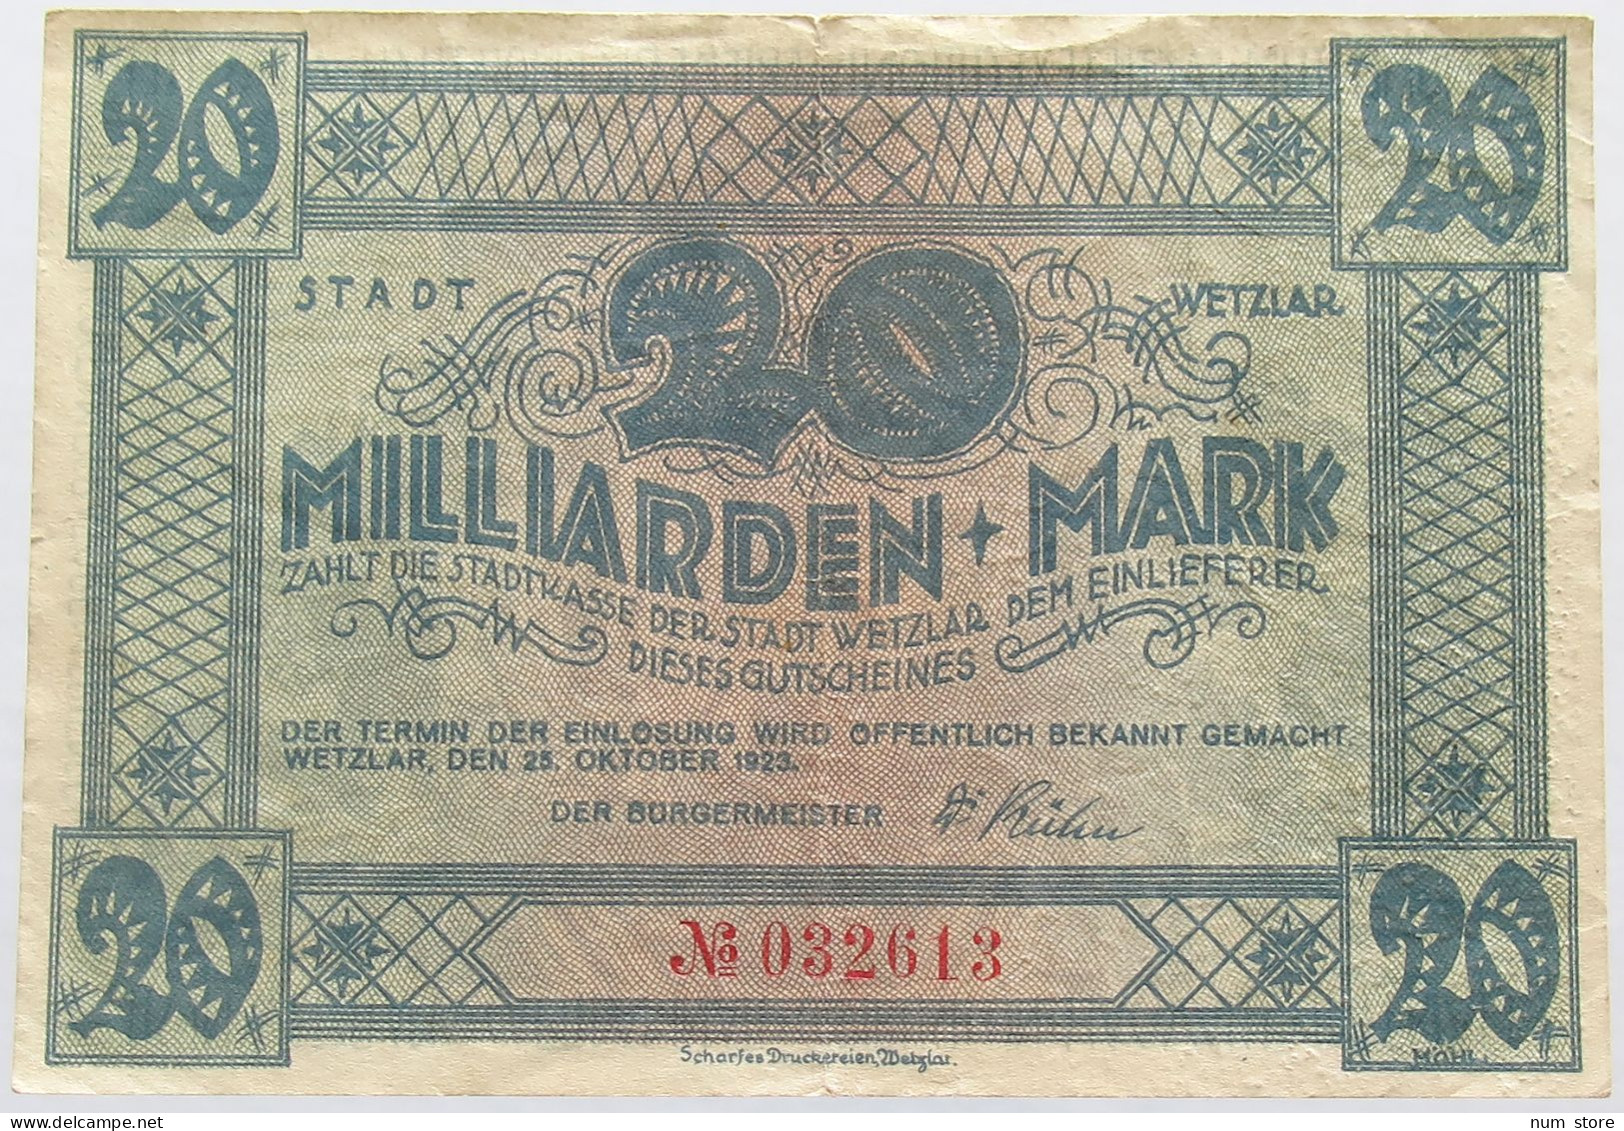 GERMANY 20 MILLIARDEN MARK WETZLAR #alb004 0025 - 20 Miljard Mark